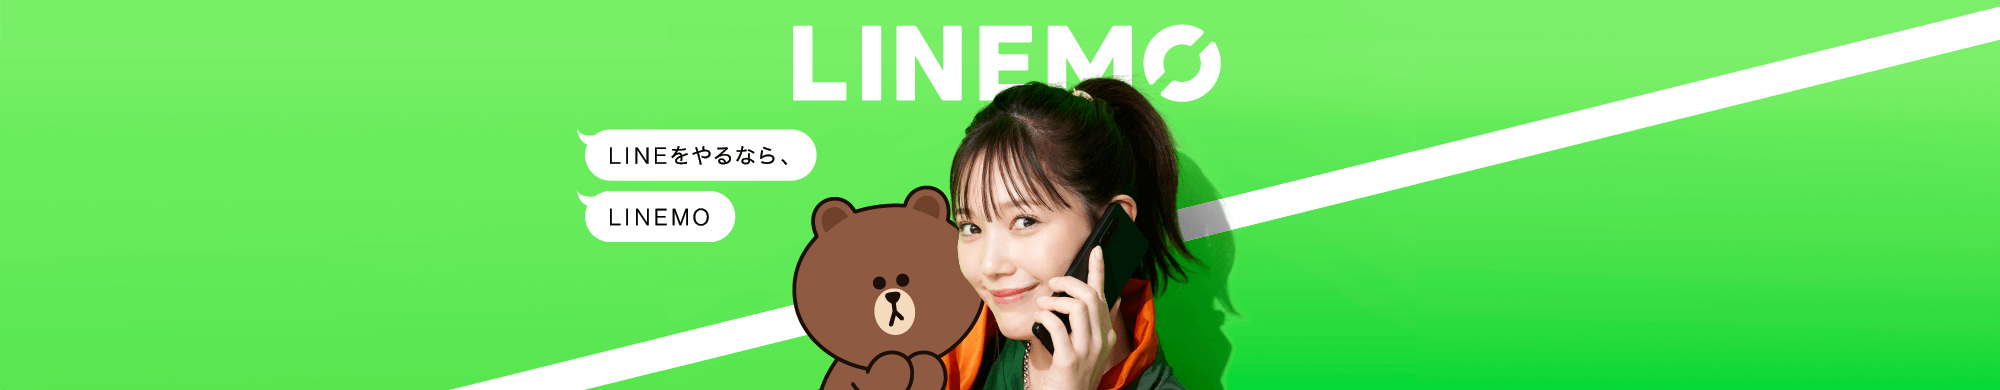 LINEを使う人のための格安SIMブランド「LINEMO」。月990円(税込)・3GBのミニプランと、月2,728円(税込)・20GBのスマホプランは、両方ともキャリア品質の高速回線。さらにLINEギガフリーでギガ節約！